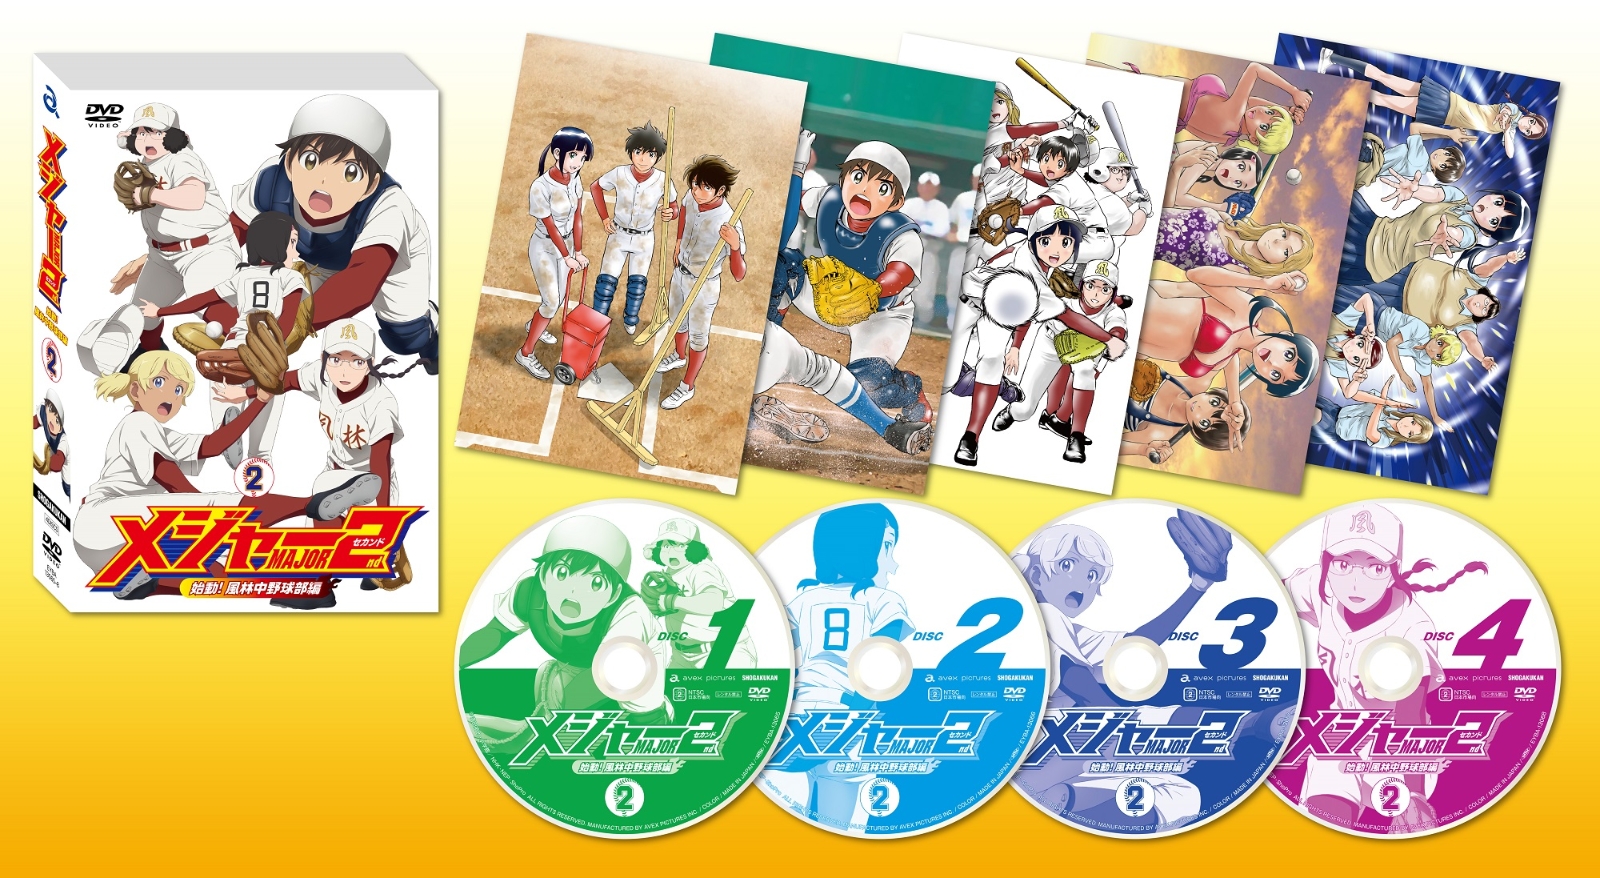 メジャーセカンド始動！風林中野球部編 DVD BOX Vol.2画像